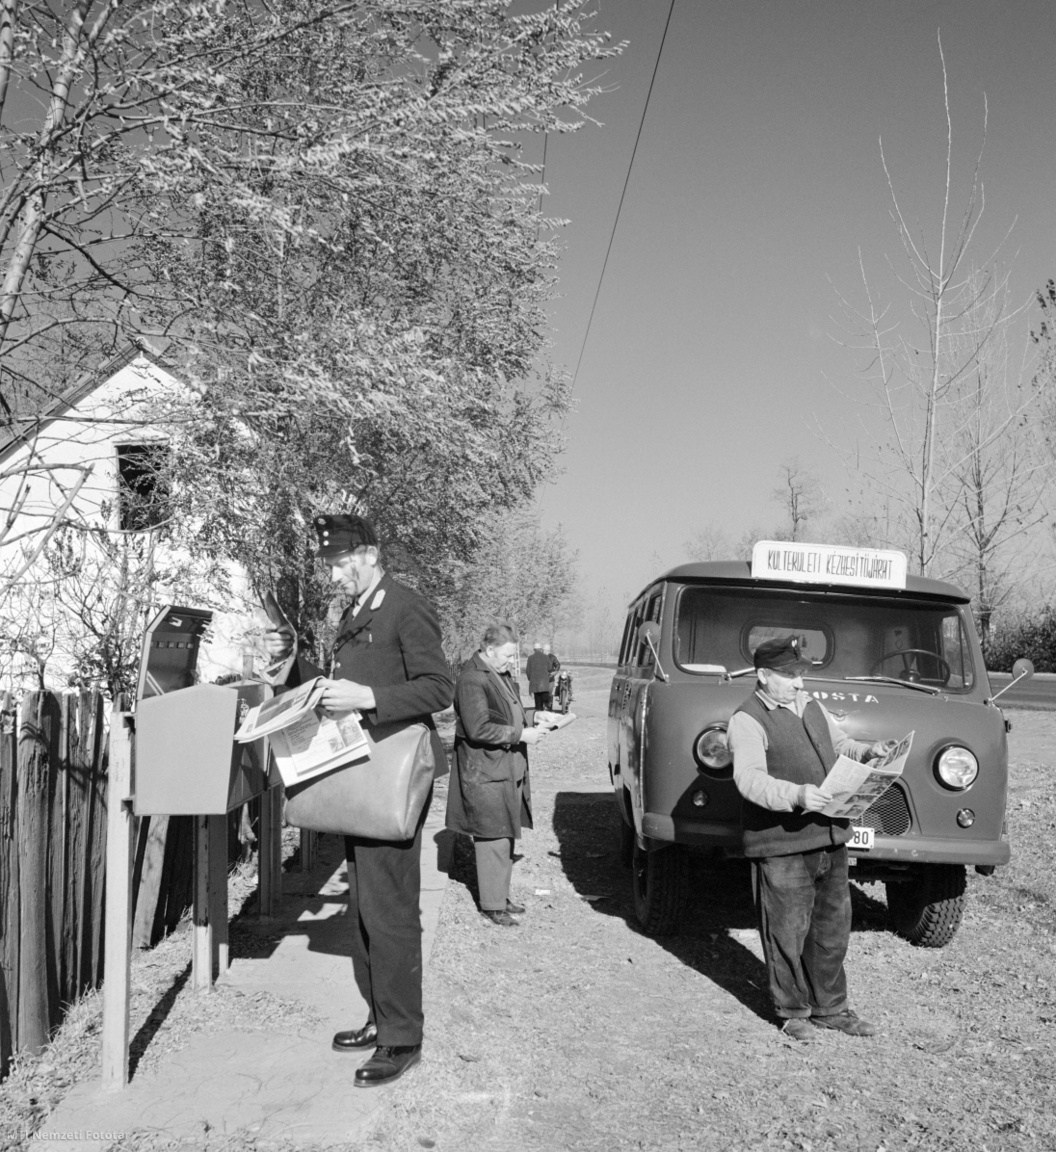 Kiskunfélegyháza, 1973. október 10. A posta külön busszal, külterületi kézbesítőjárattal hordja a postai küldeményeket a kiskunfélegyházi tanyavilágban.